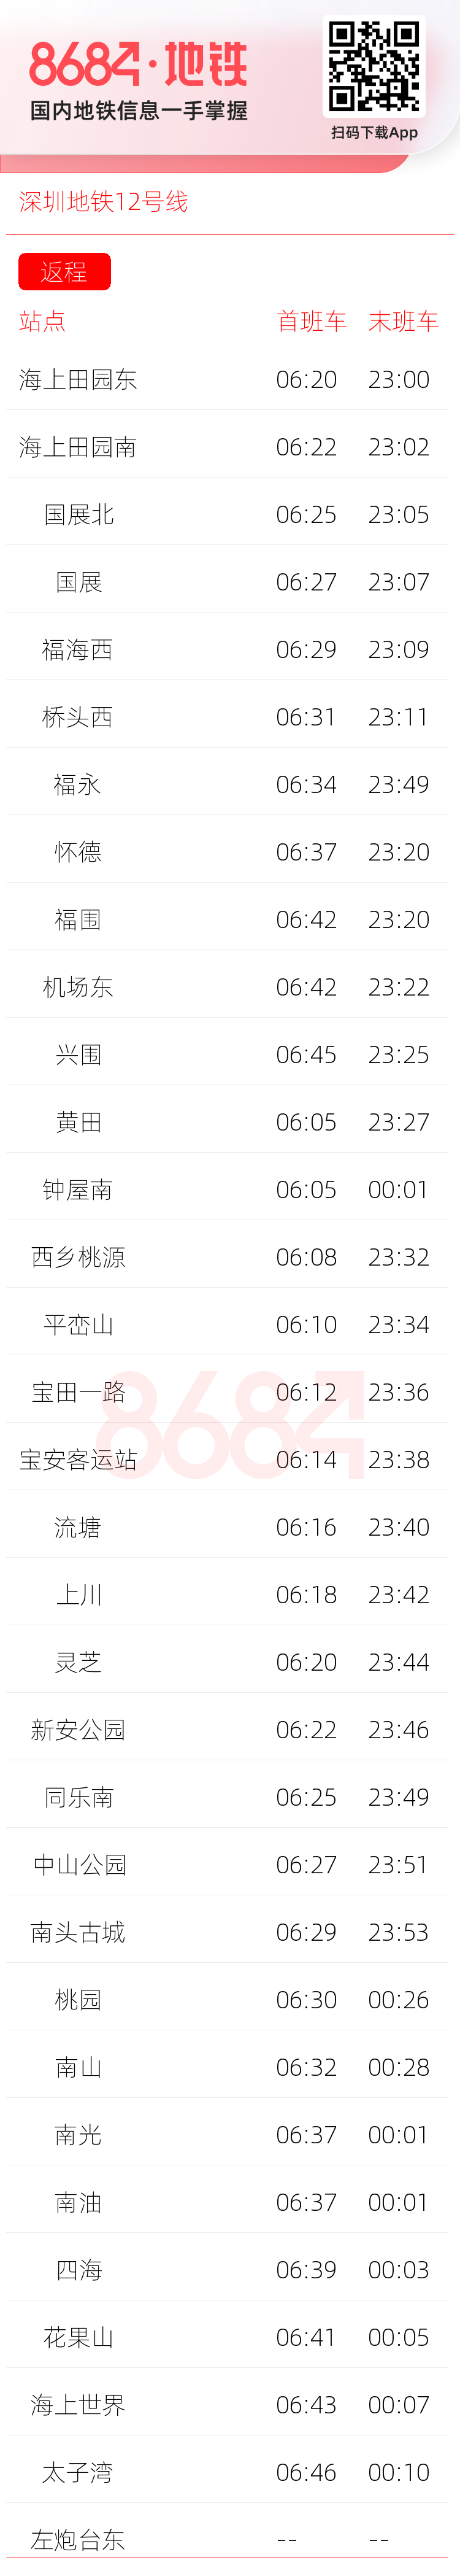 深圳地铁12号线运营时间表